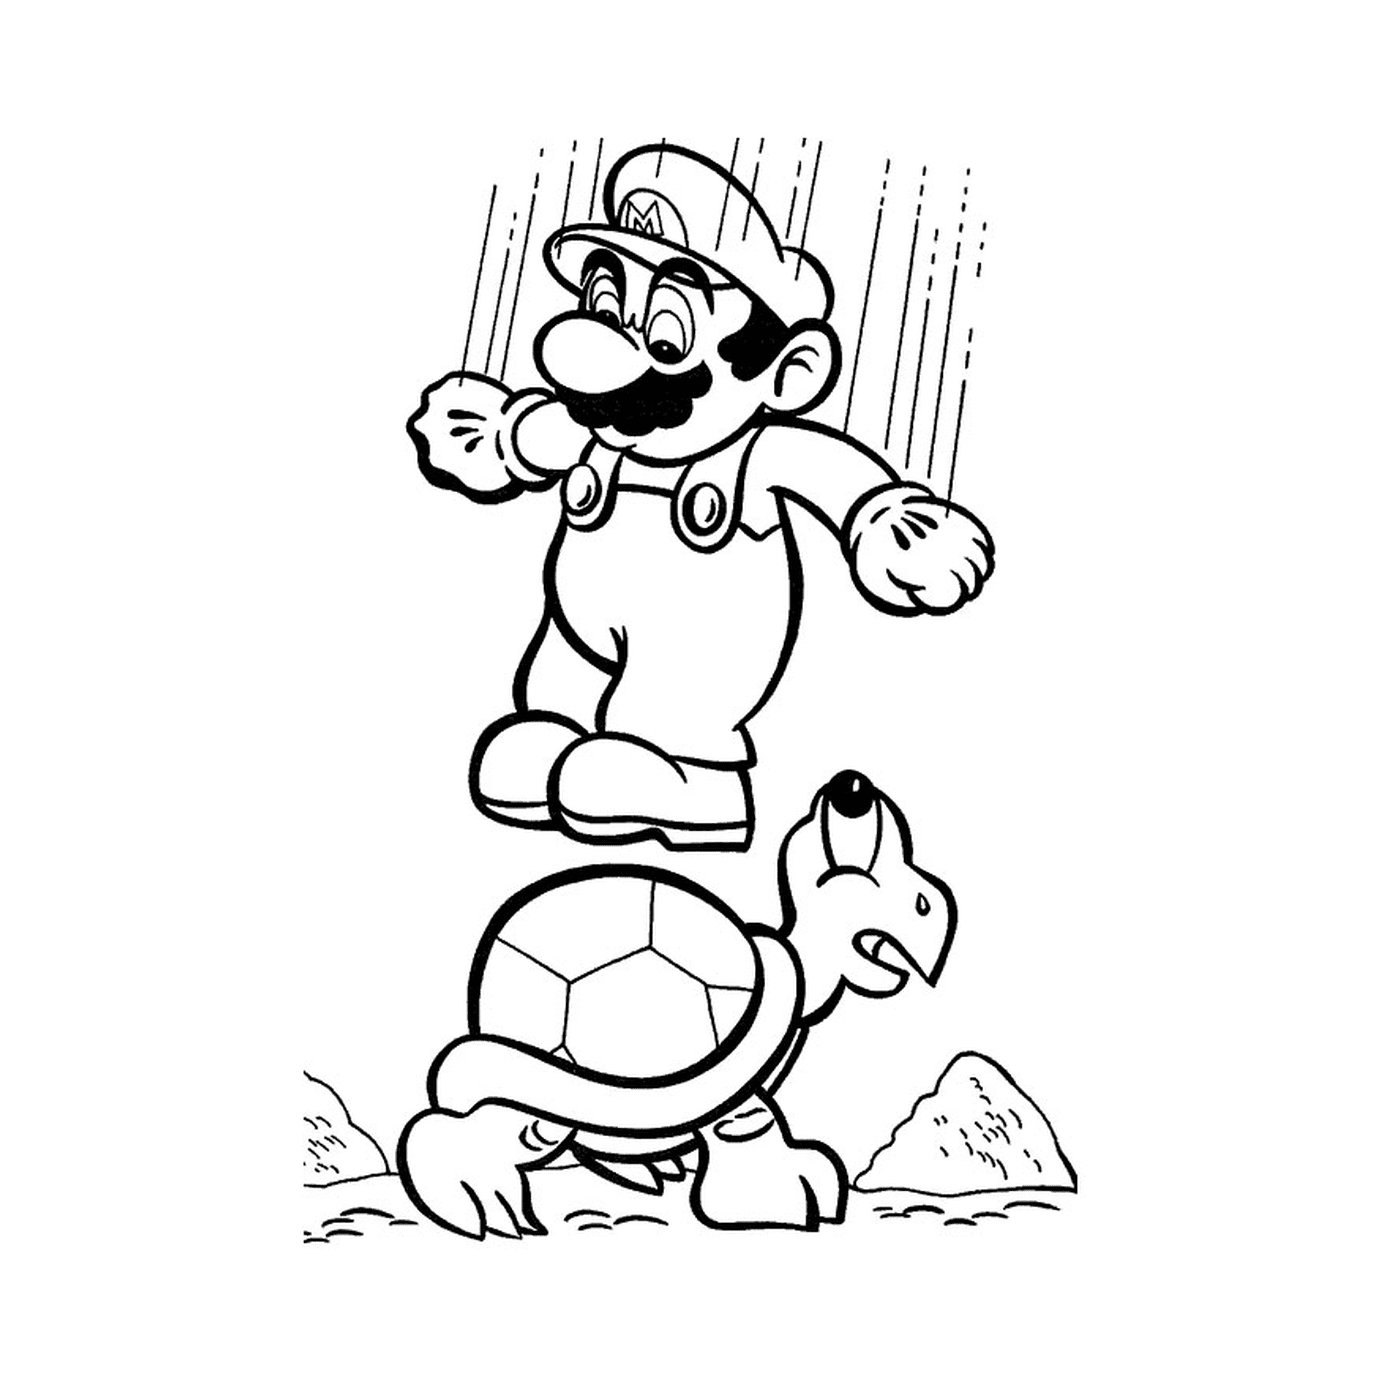  Mario und eine Schildkröte 